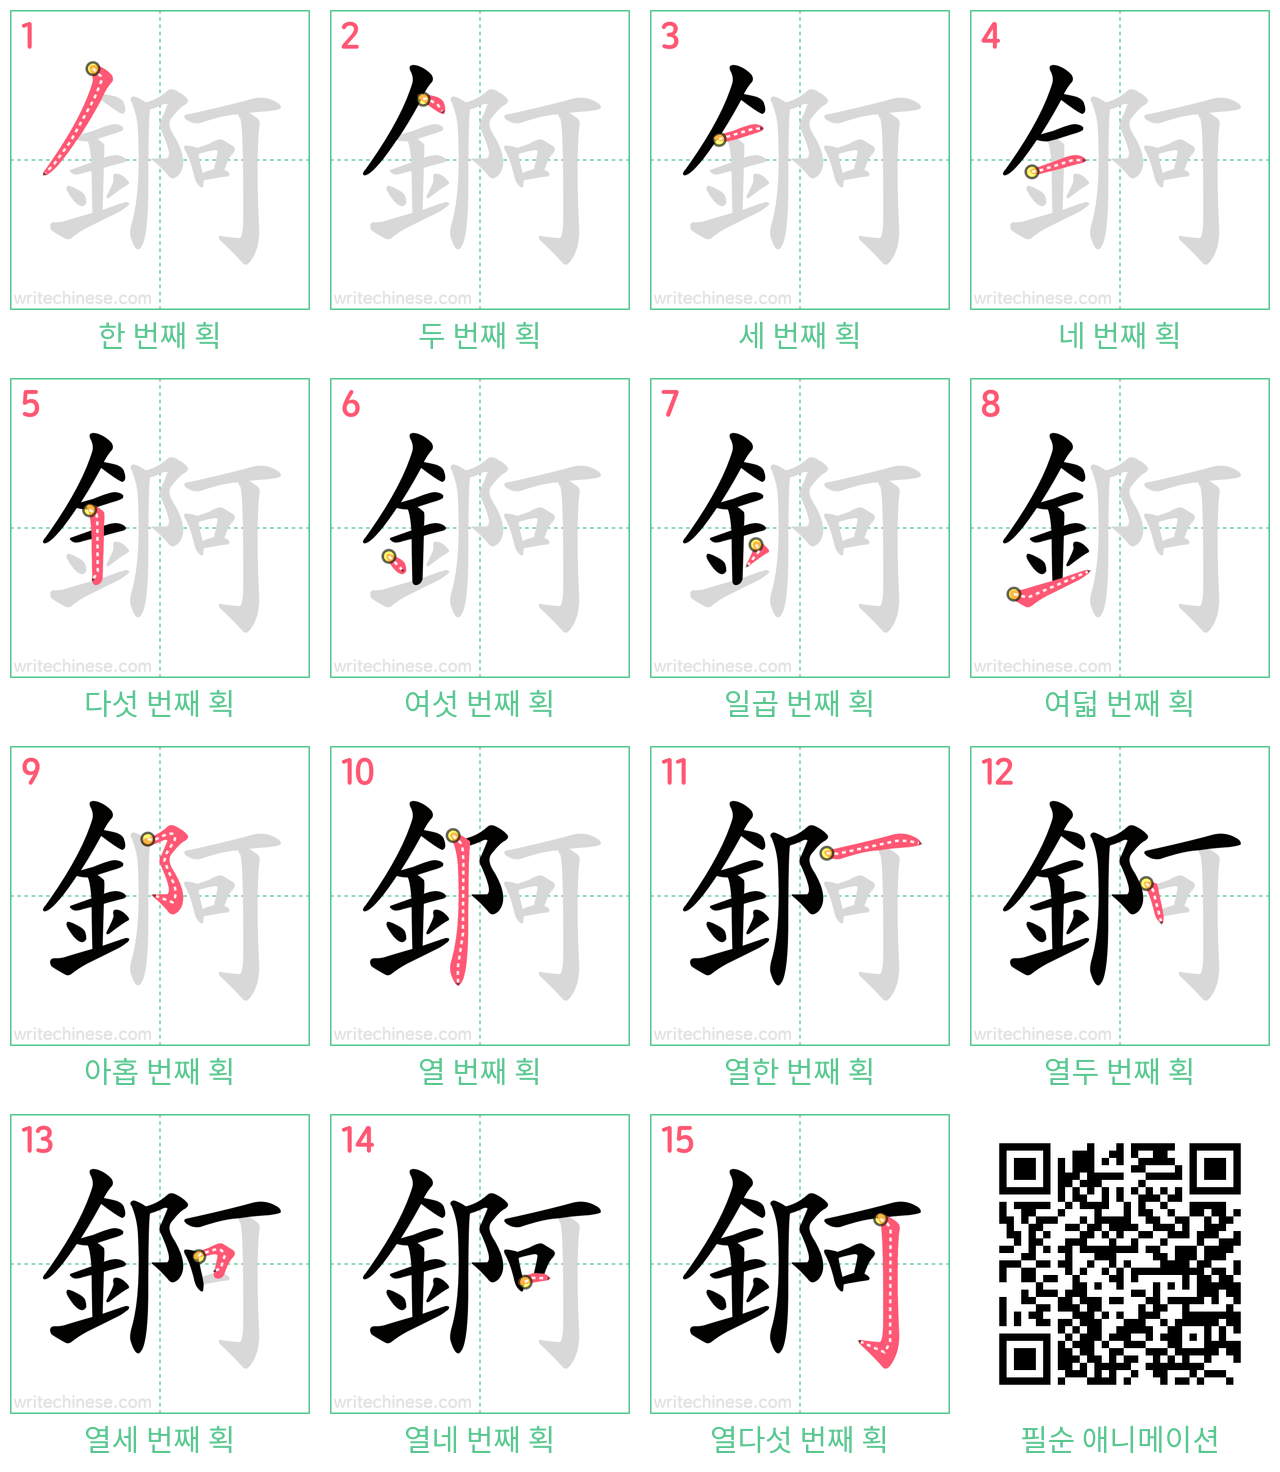 錒 step-by-step stroke order diagrams